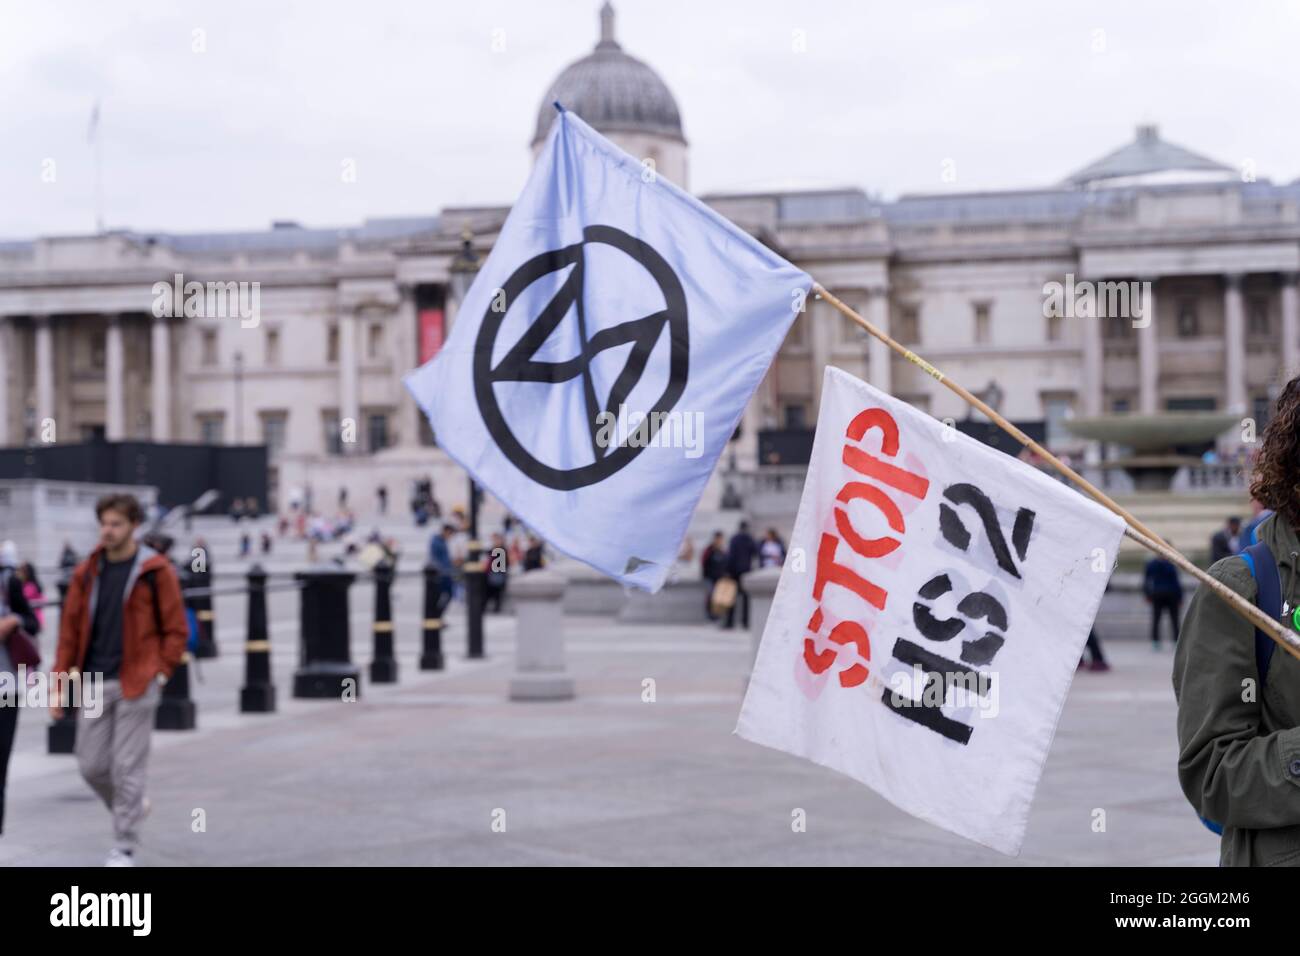 Aktivisten des Extinction Rebellion (XR), unter dem Impossible Rebellion, versammeln sich am Trafalgar Square, um gegen den Klimawandel zu protestieren London England Großbritannien Stockfoto